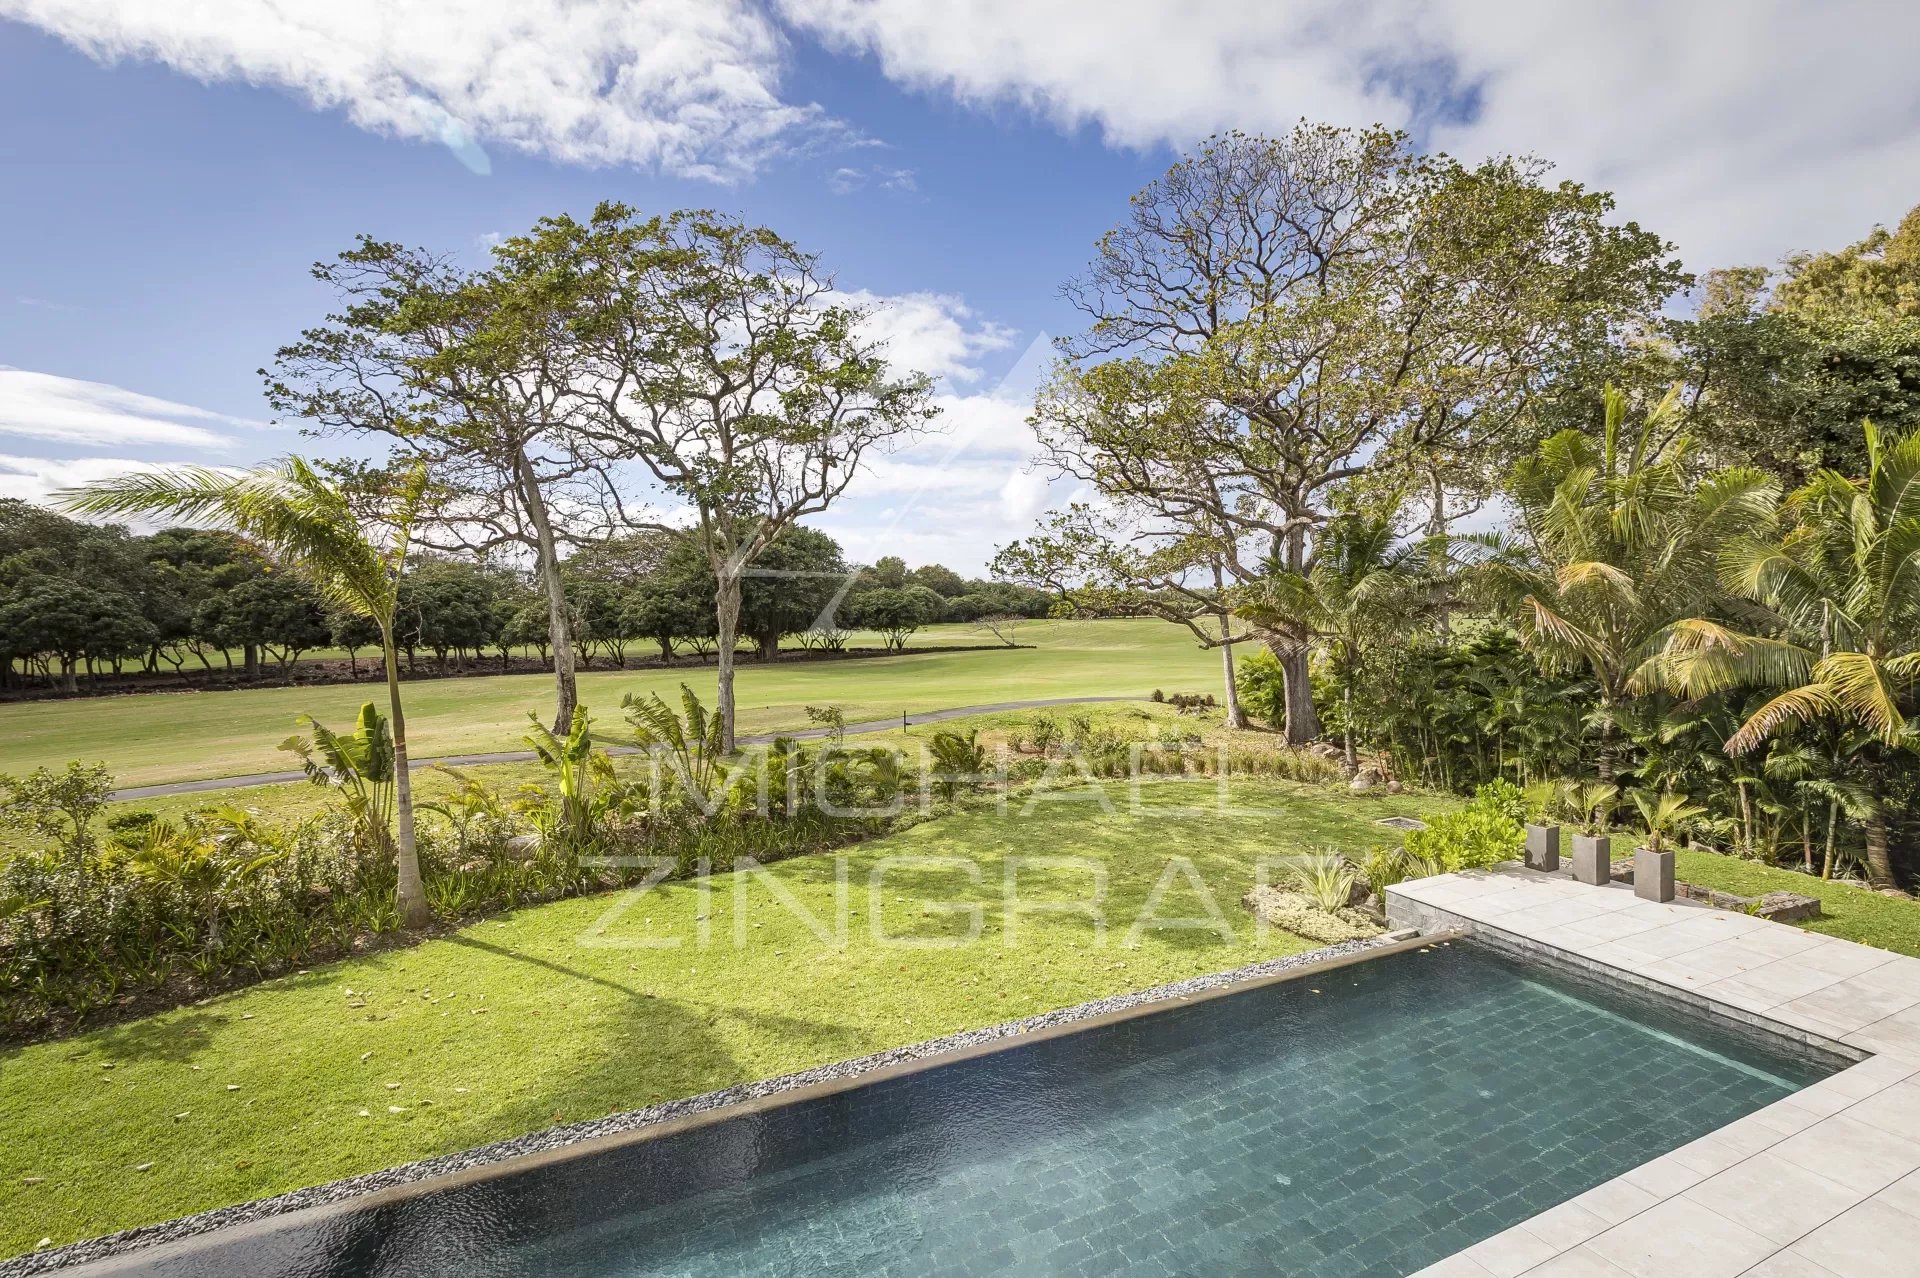 Mauritius - Fairways Villas on golf